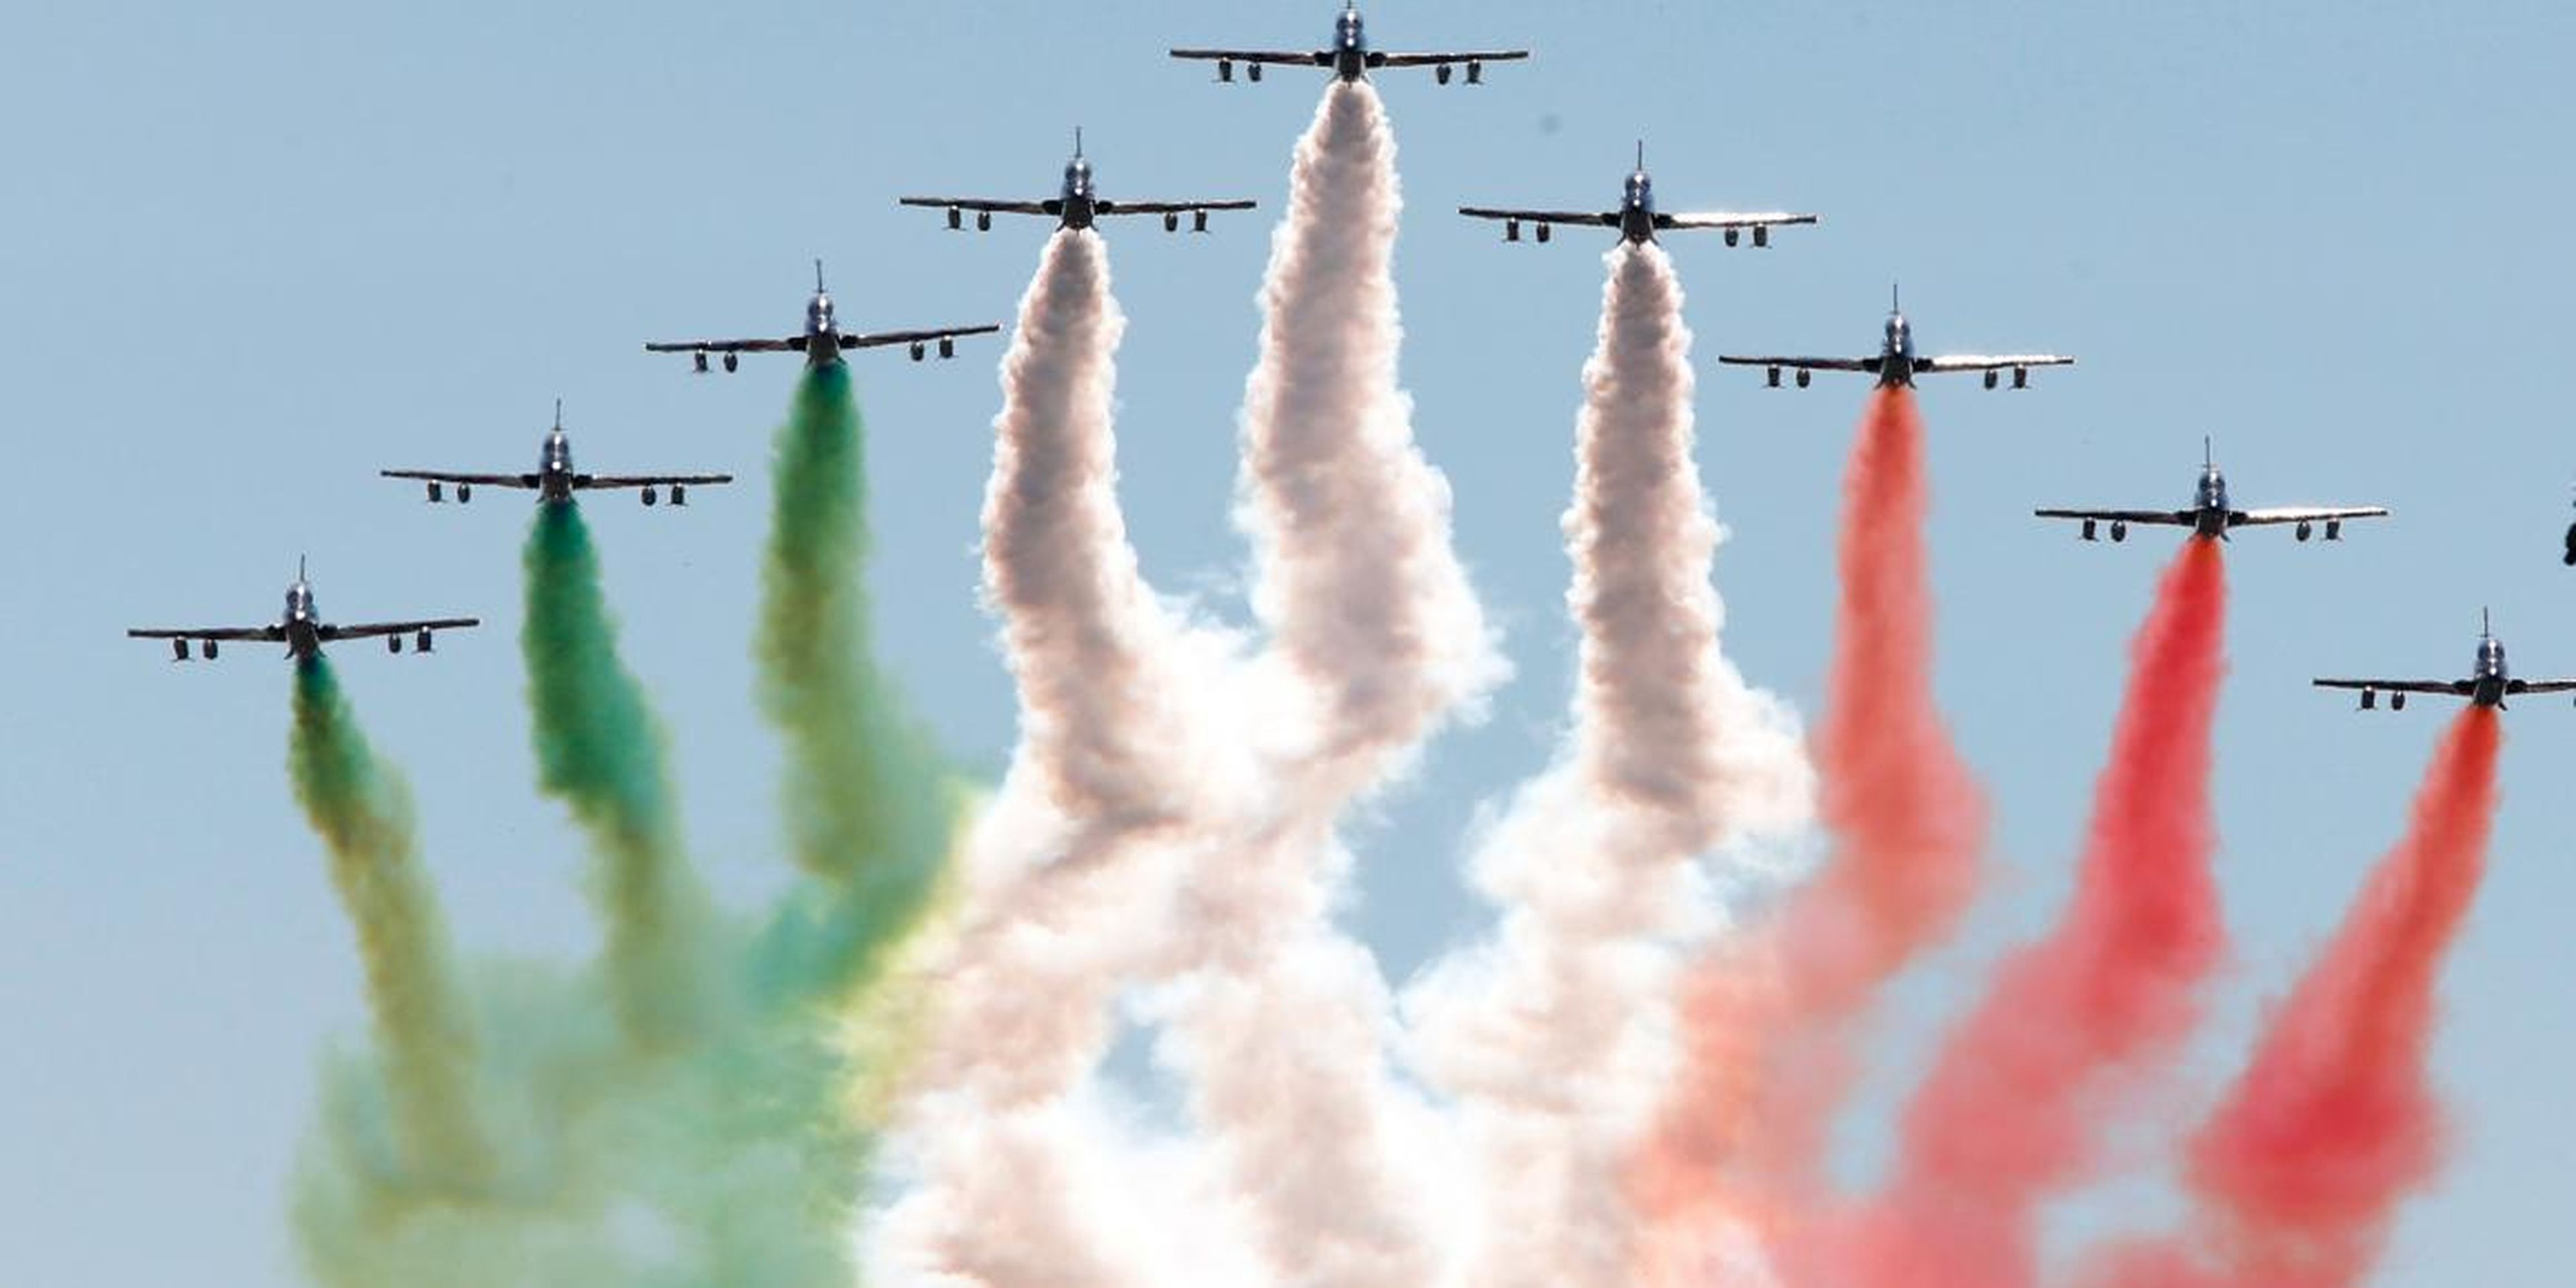 The Italian Freccie Tricolori aerobatics team perform prior the start of the Italian F1 Grand Prix in Monza, northern Italy